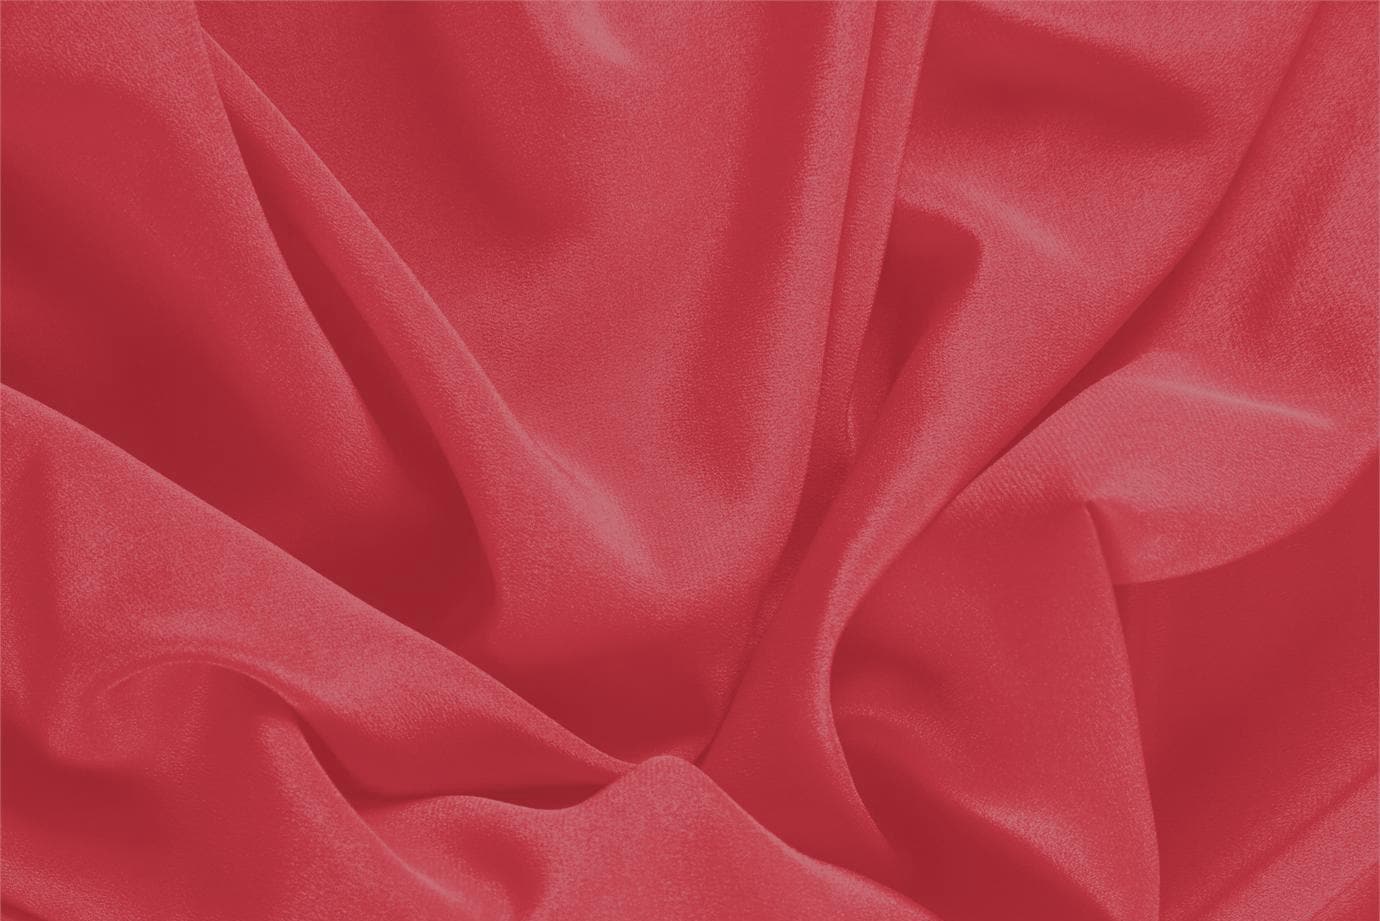 Tessuto Crêpe de Chine Rosso Rubino in Seta per abbigliamento